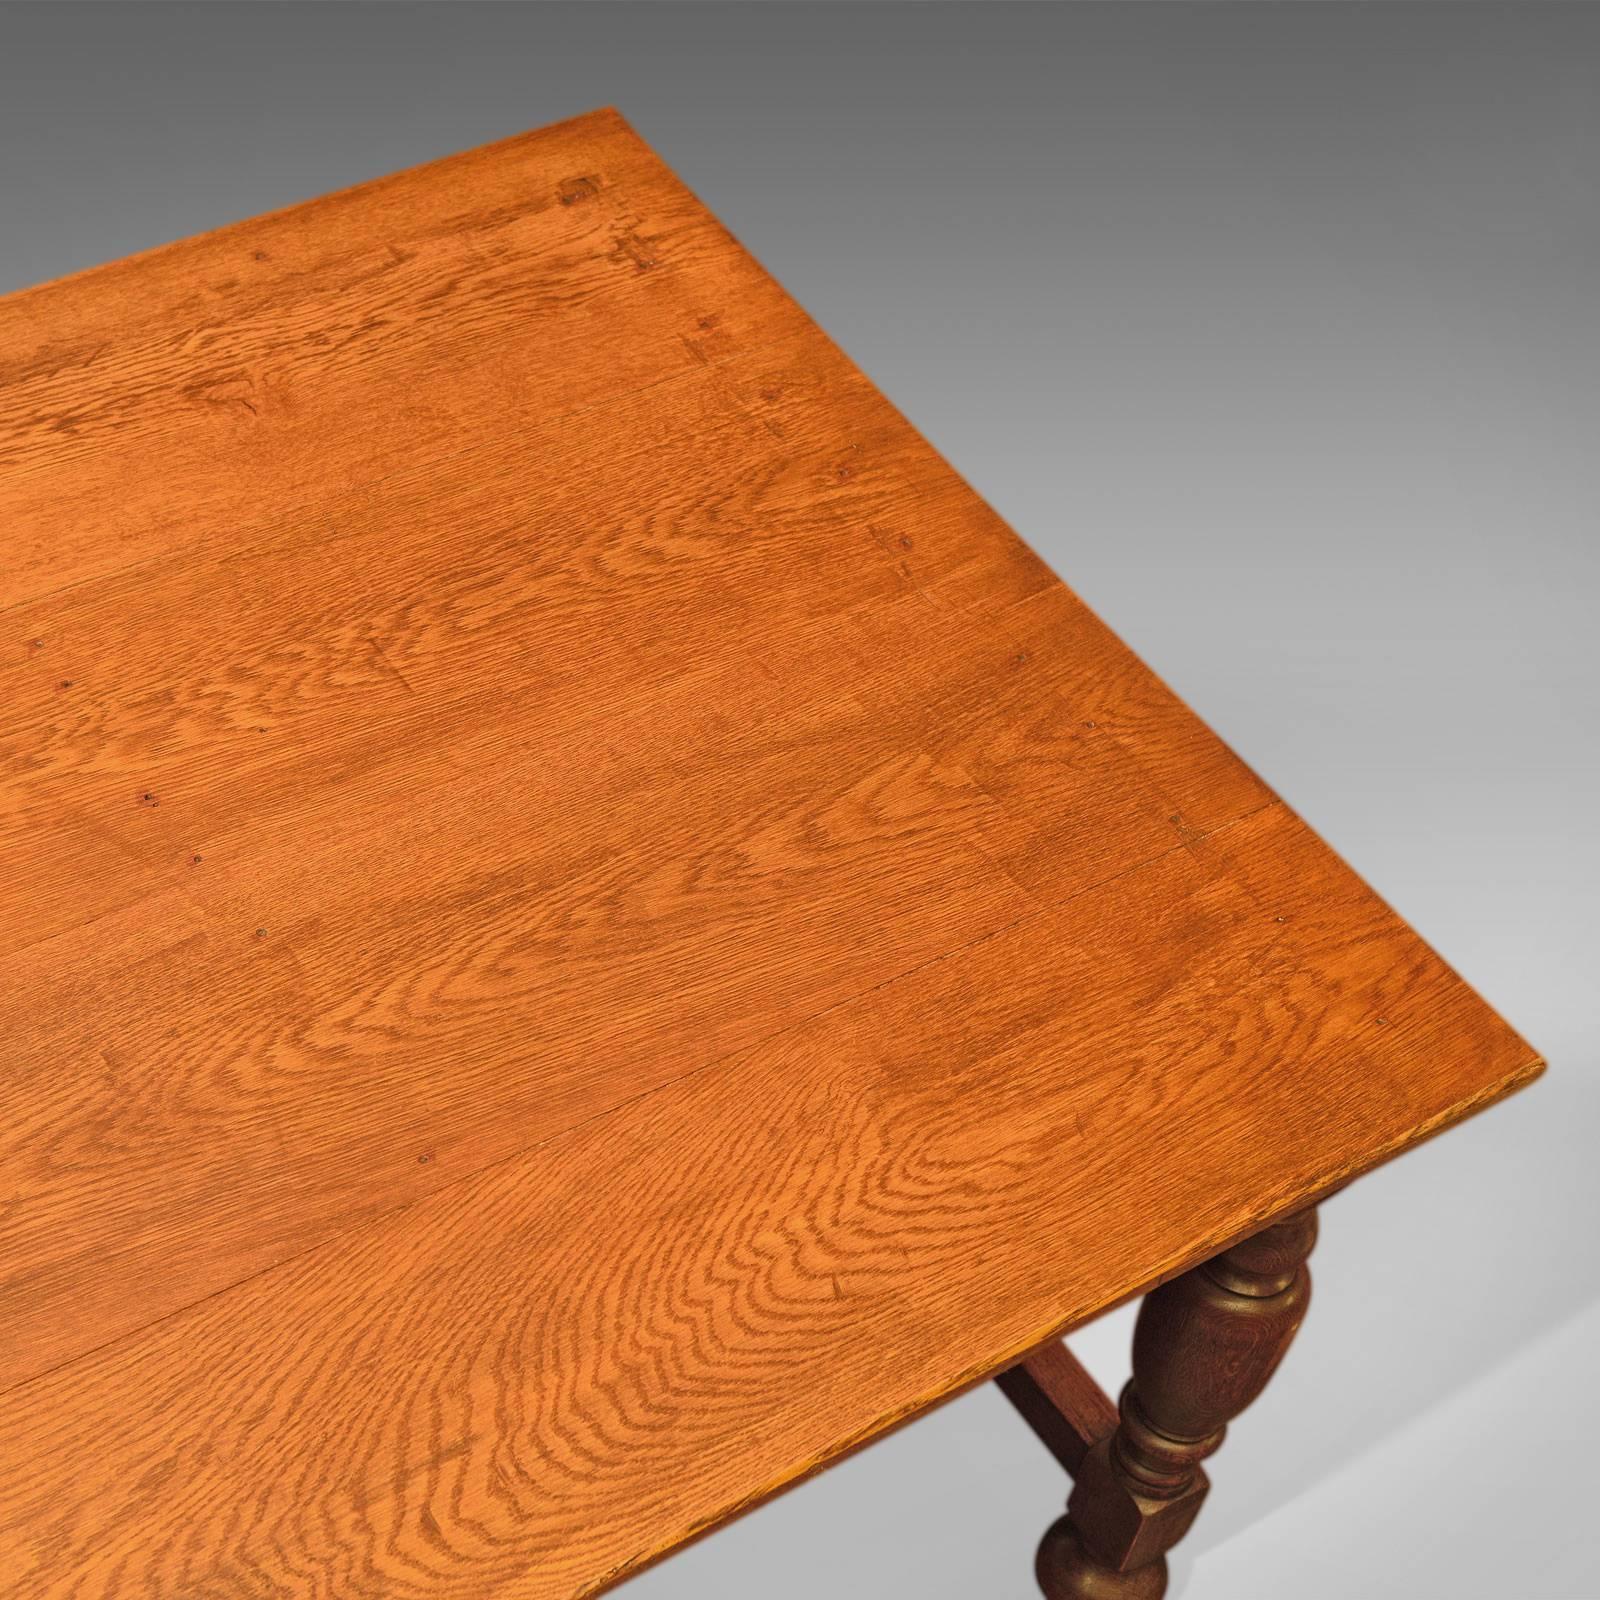 antique oak kitchen table